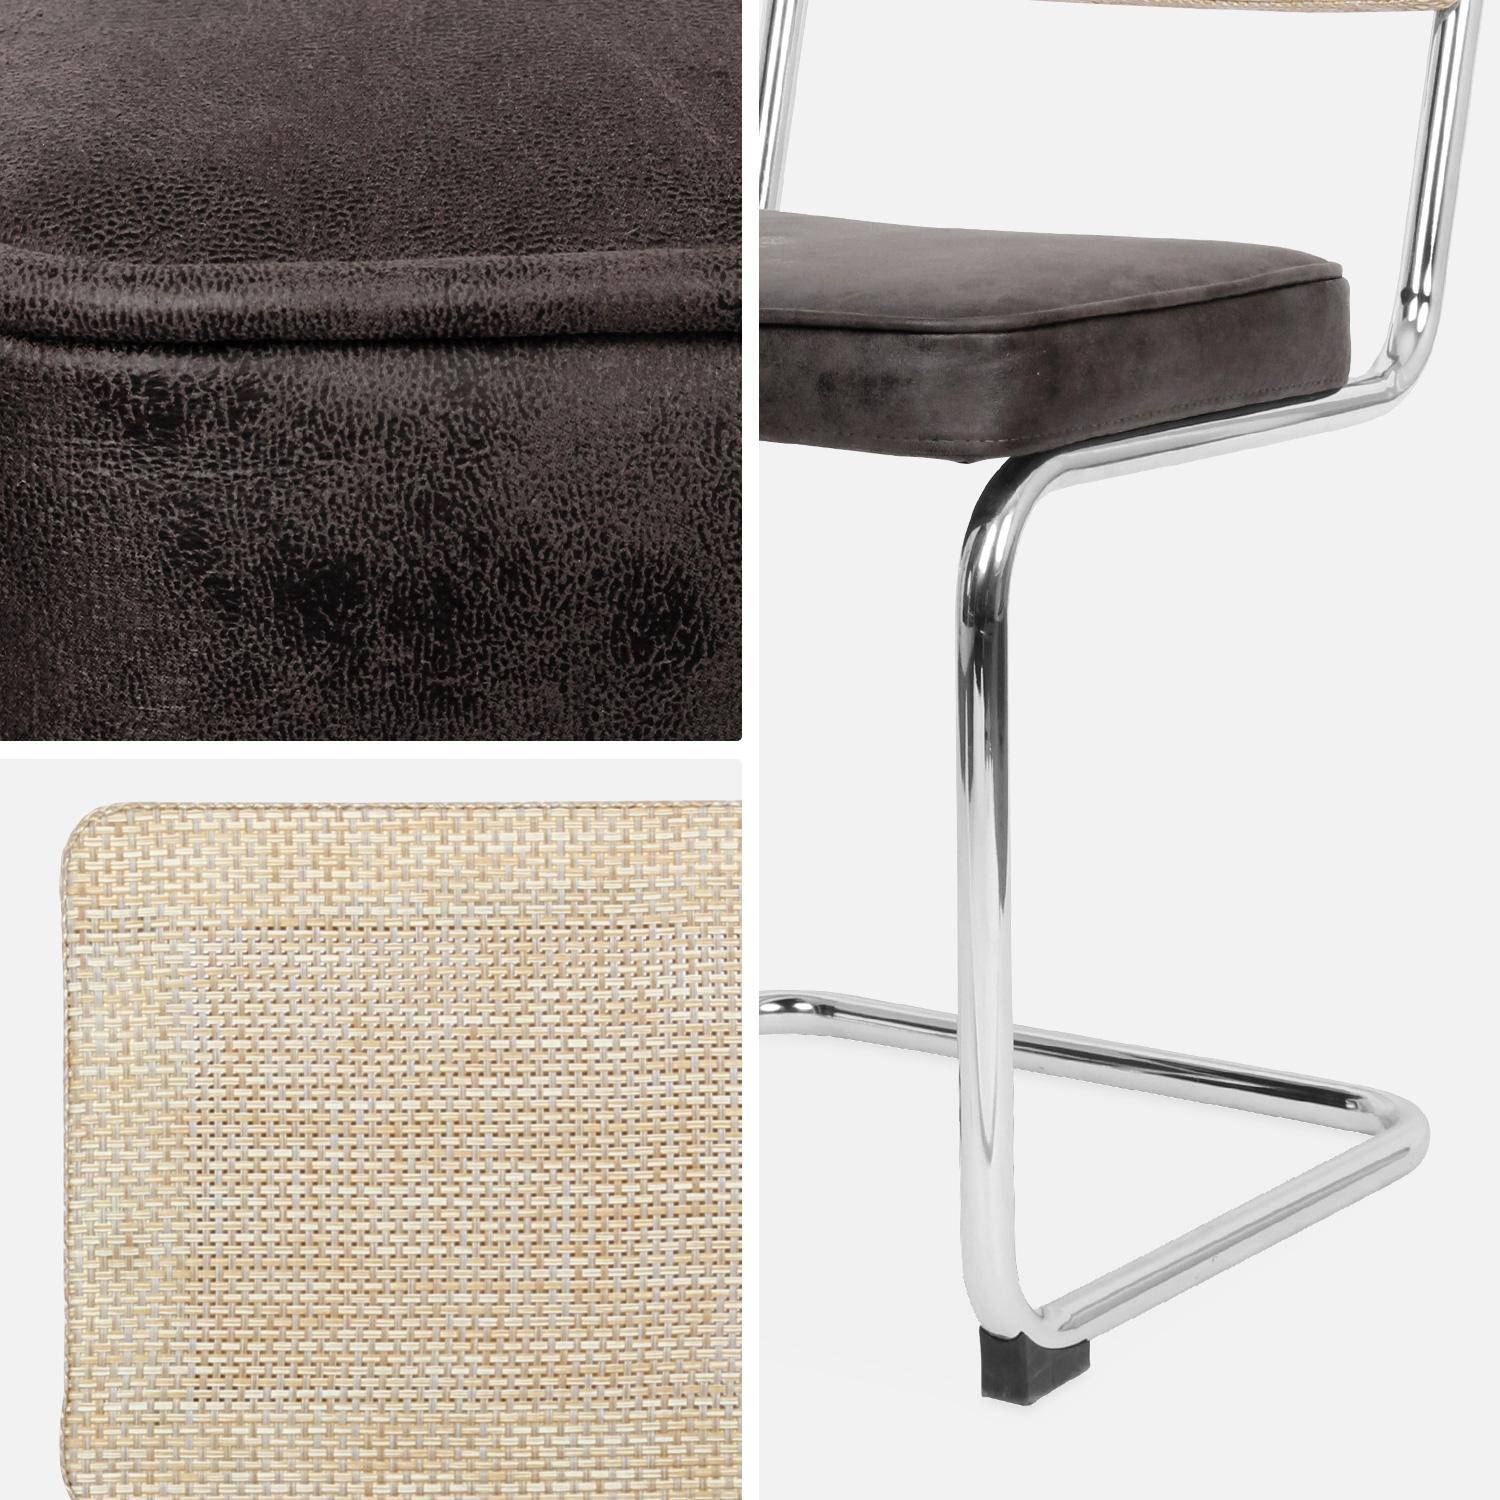 2 cadeiras cantilever - Maja - tecido preto e resina com efeito rattan, 46 x 54,5 x 84,5cm Photo8